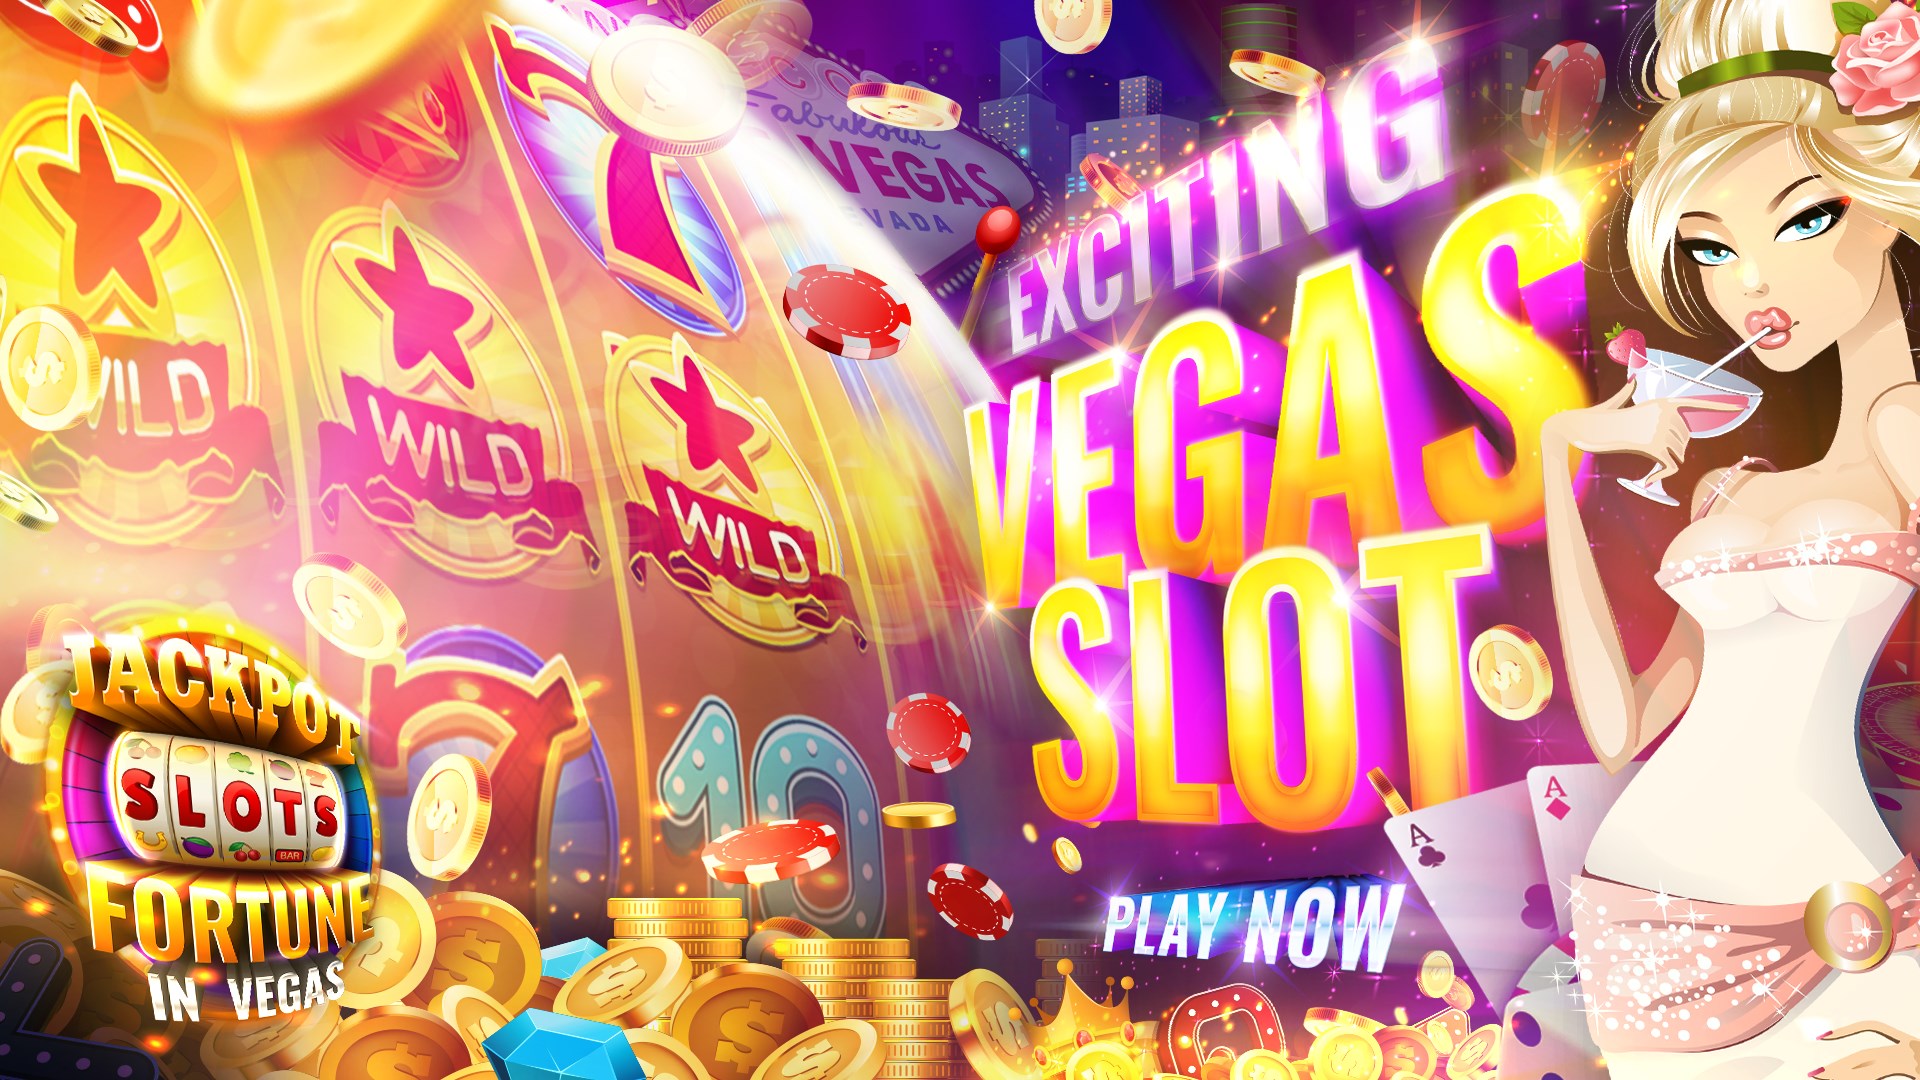 Imágen 1 Fortune in Vegas Slots windows